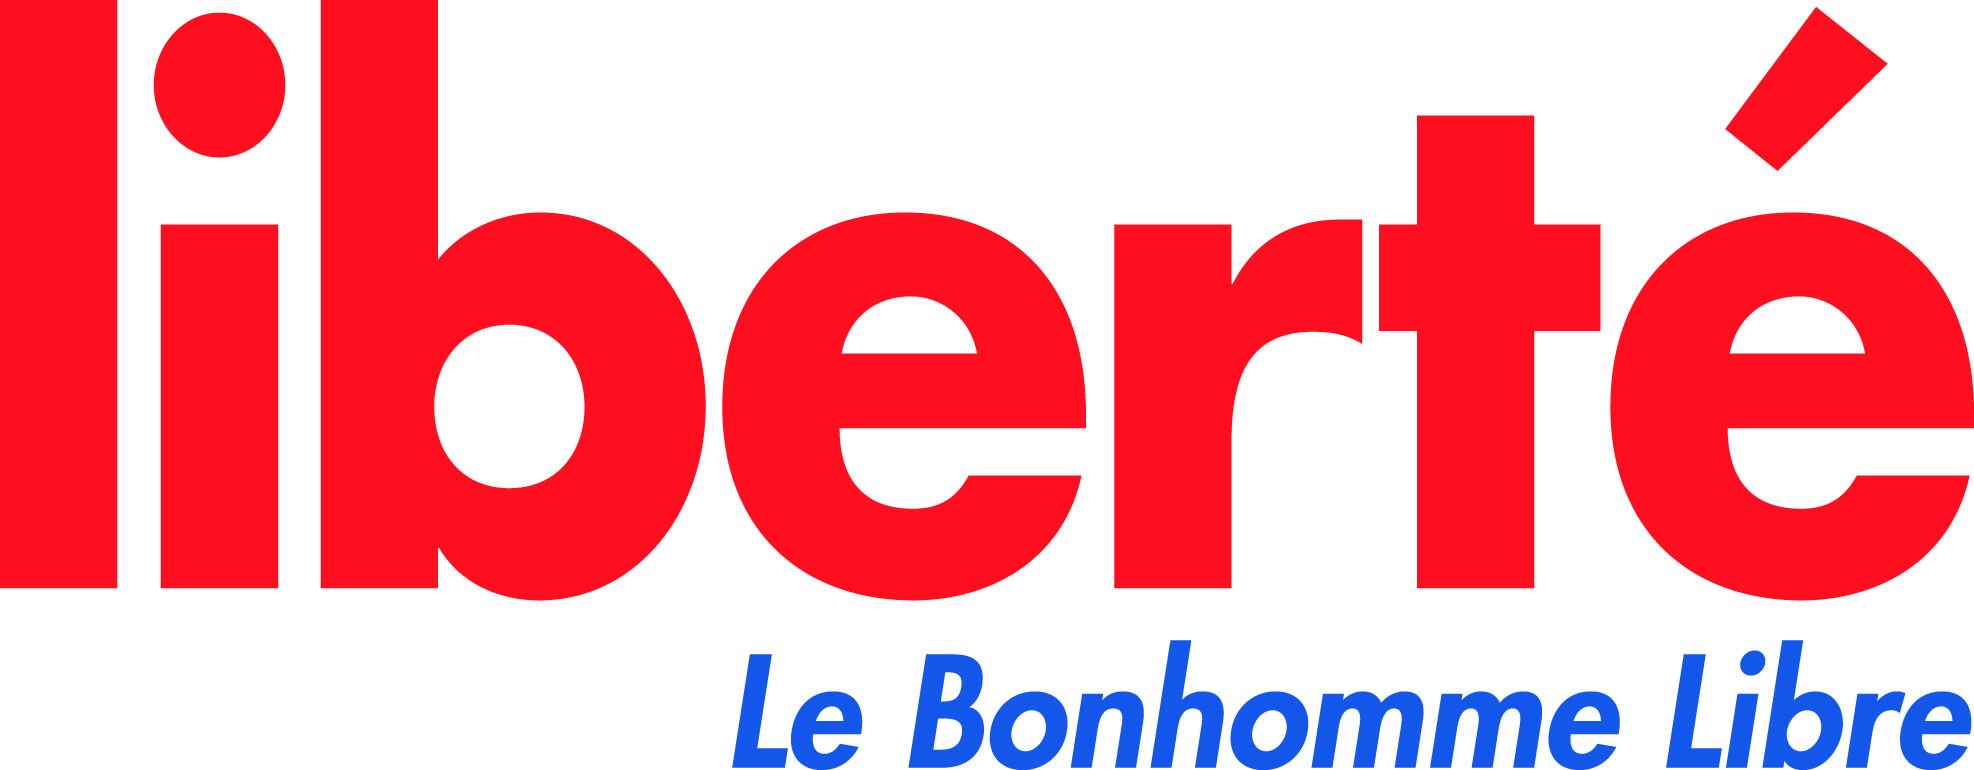 logo_Liberté-Le Bonhomme Libre_2016_Edilivre